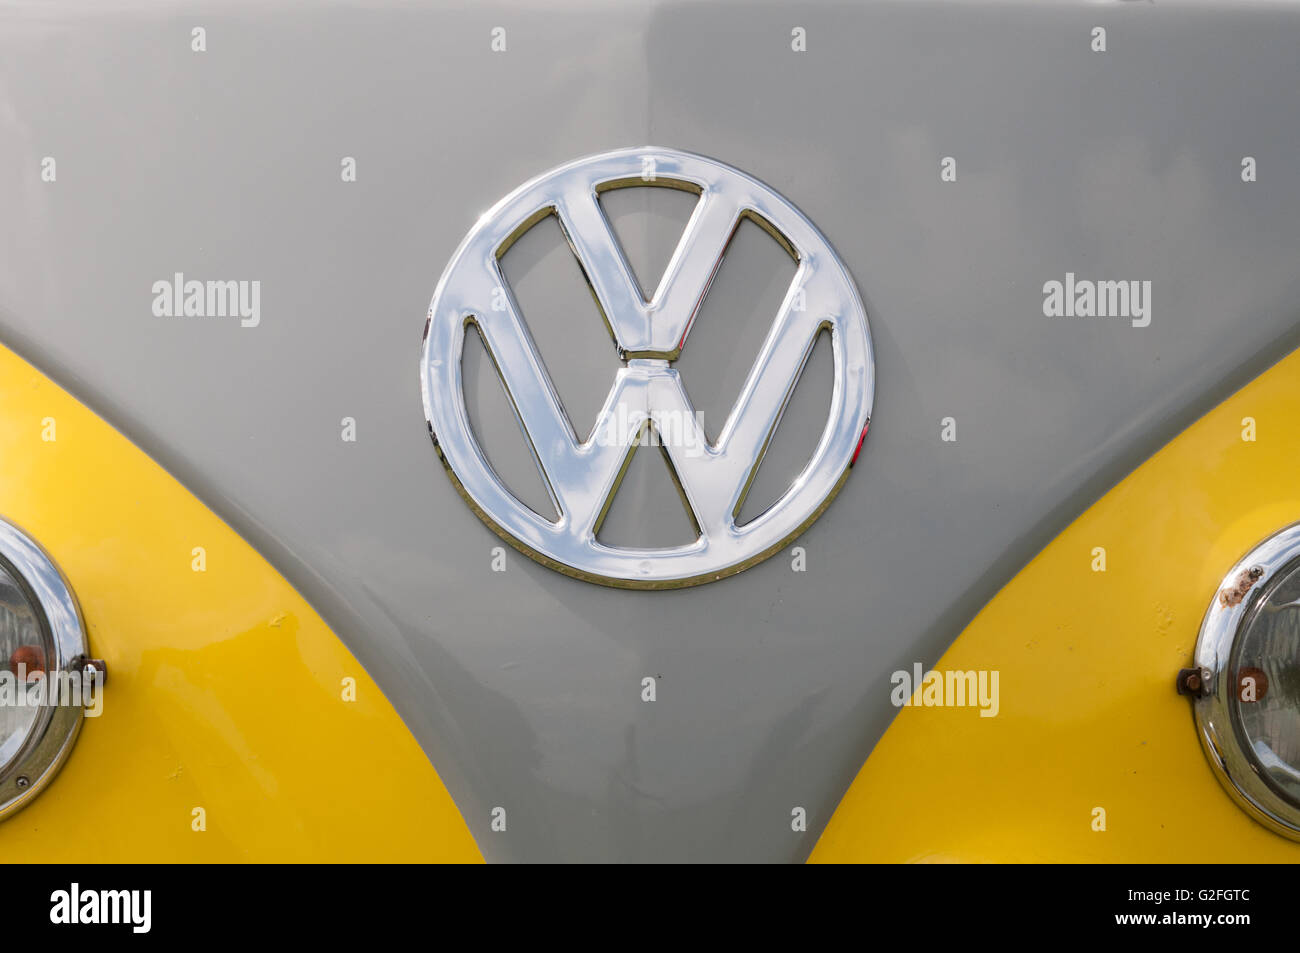 Volkswagen (VW) symbol on a vintage van Stock Photo